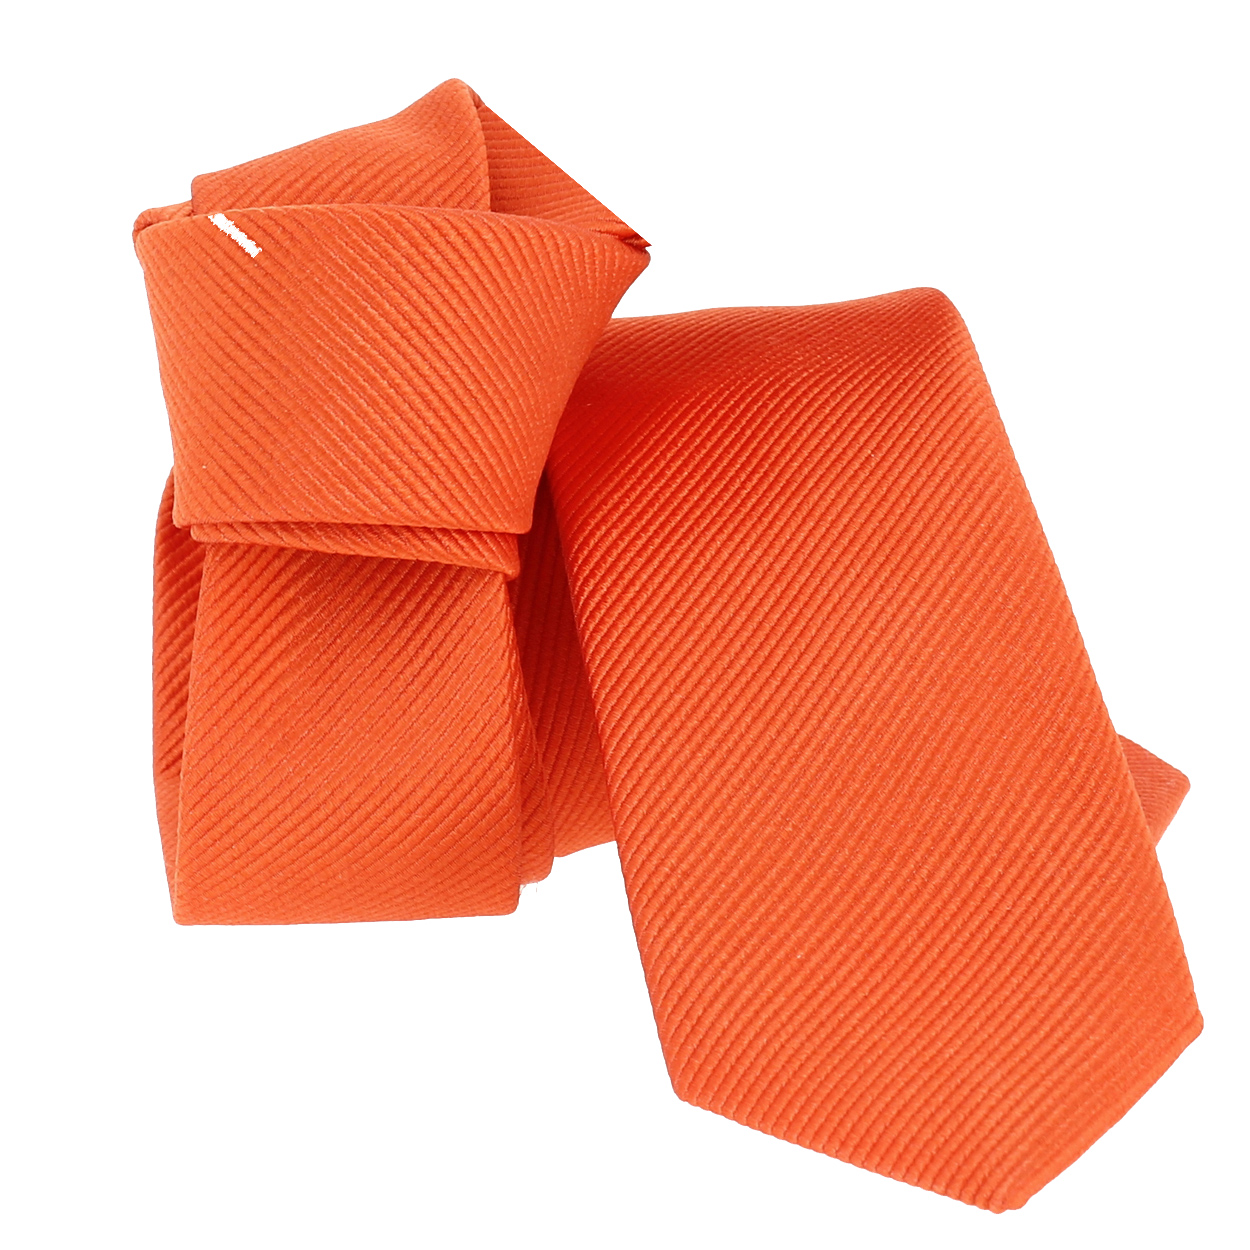 Cravate slim Segni et Disegni Slim Orange Soie Uni Homme Slim